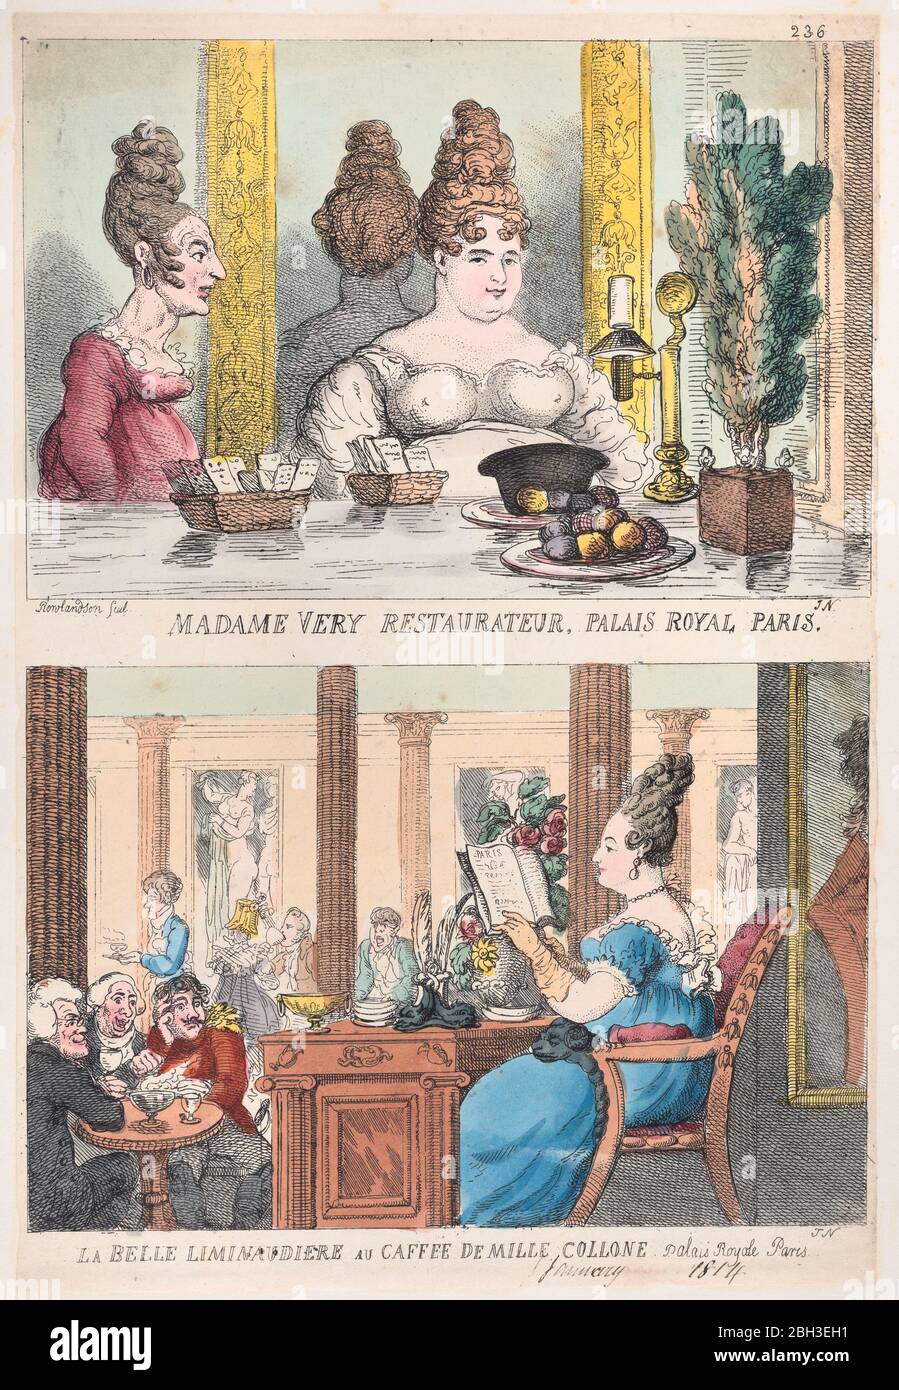 Madame Very Restauranteur, Palais Royal Paris and La Belle Liminaudiere au Caffee De Mille Collone, Palais Royale Paris, 1814. Stock Photo